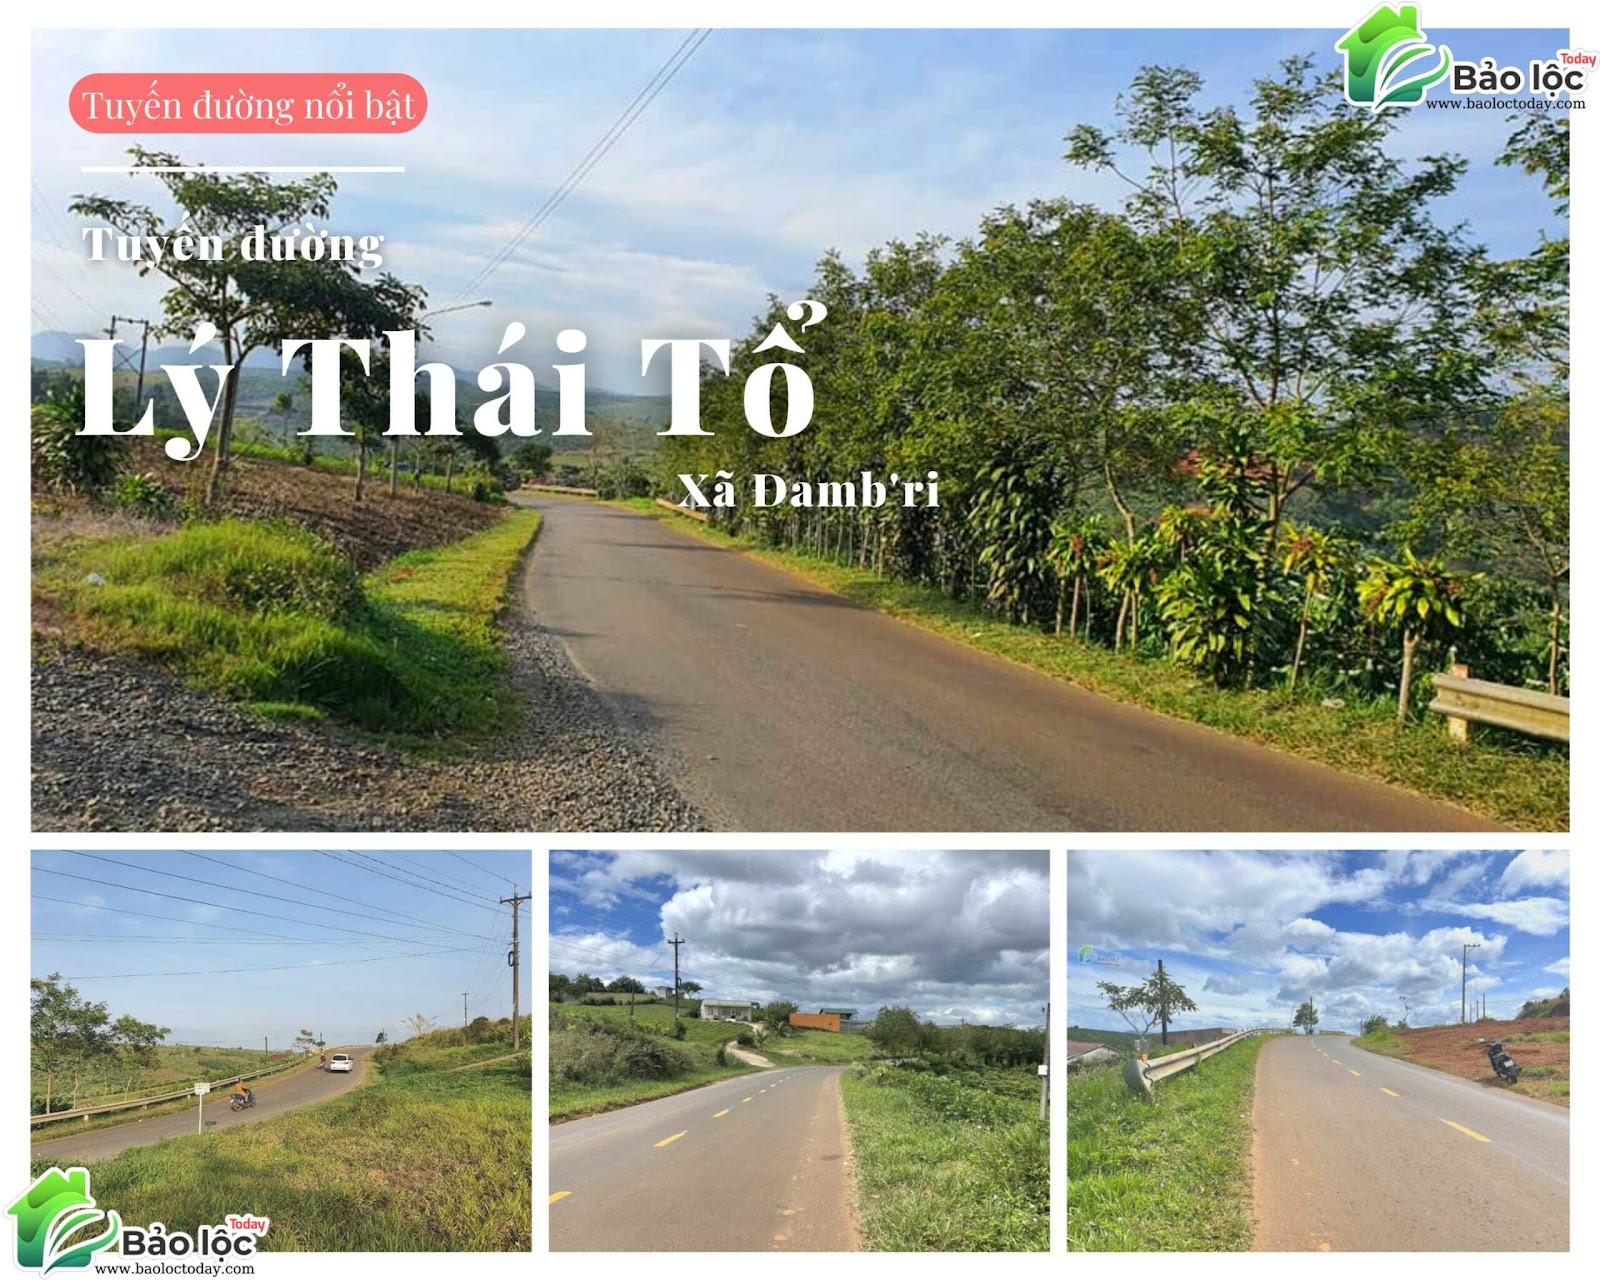 Hình ảnh thực tế đường Lý Thái Tổ, xã Đambri, thành phố Bảo lộc